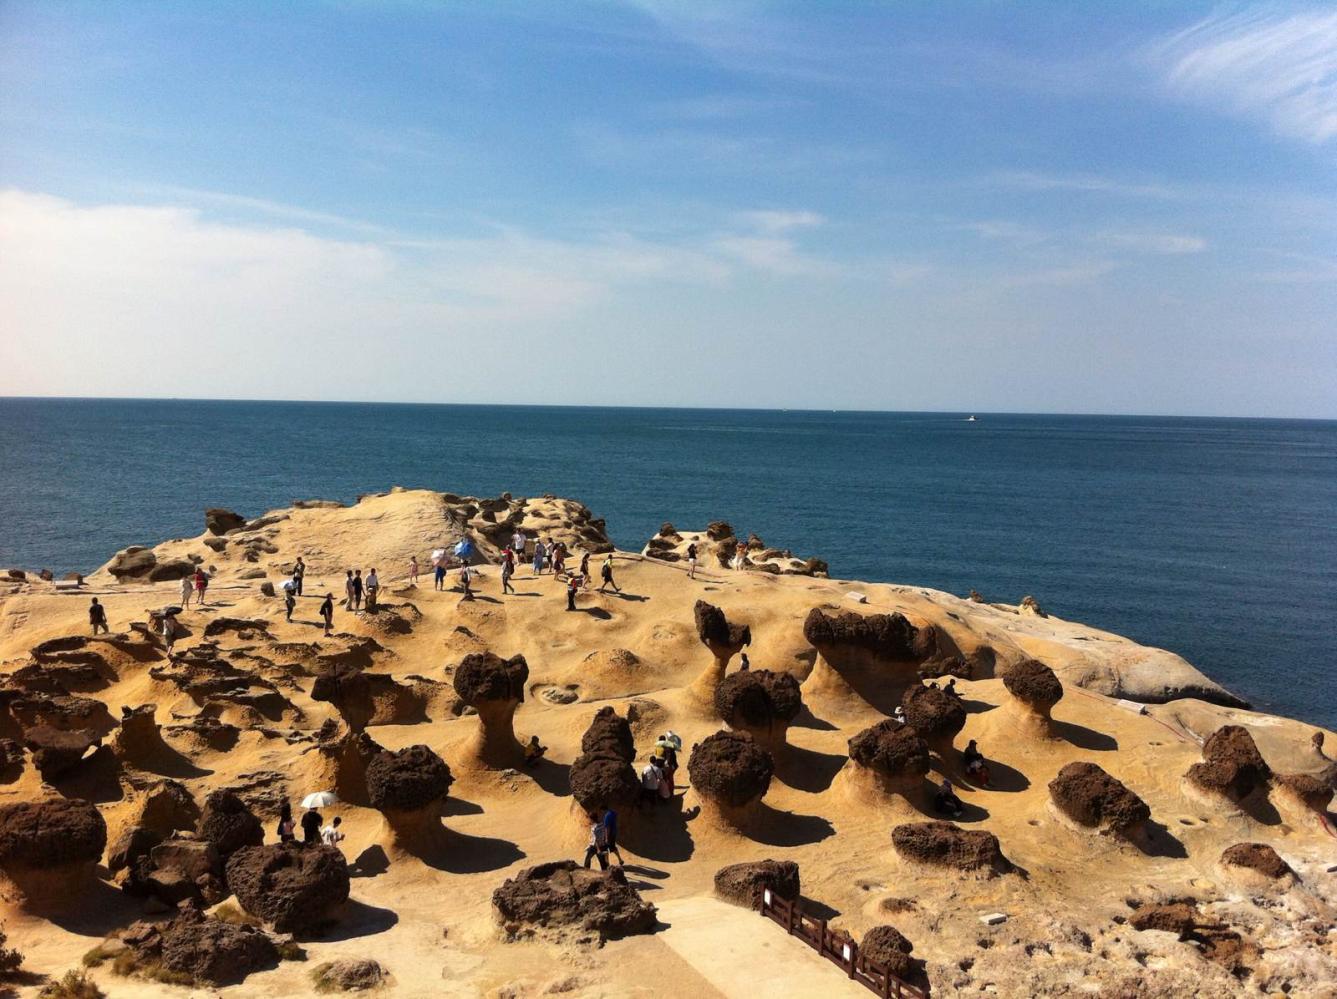 这里有举世罕见的海岸地貌景观180个蕈状岩屹立成群